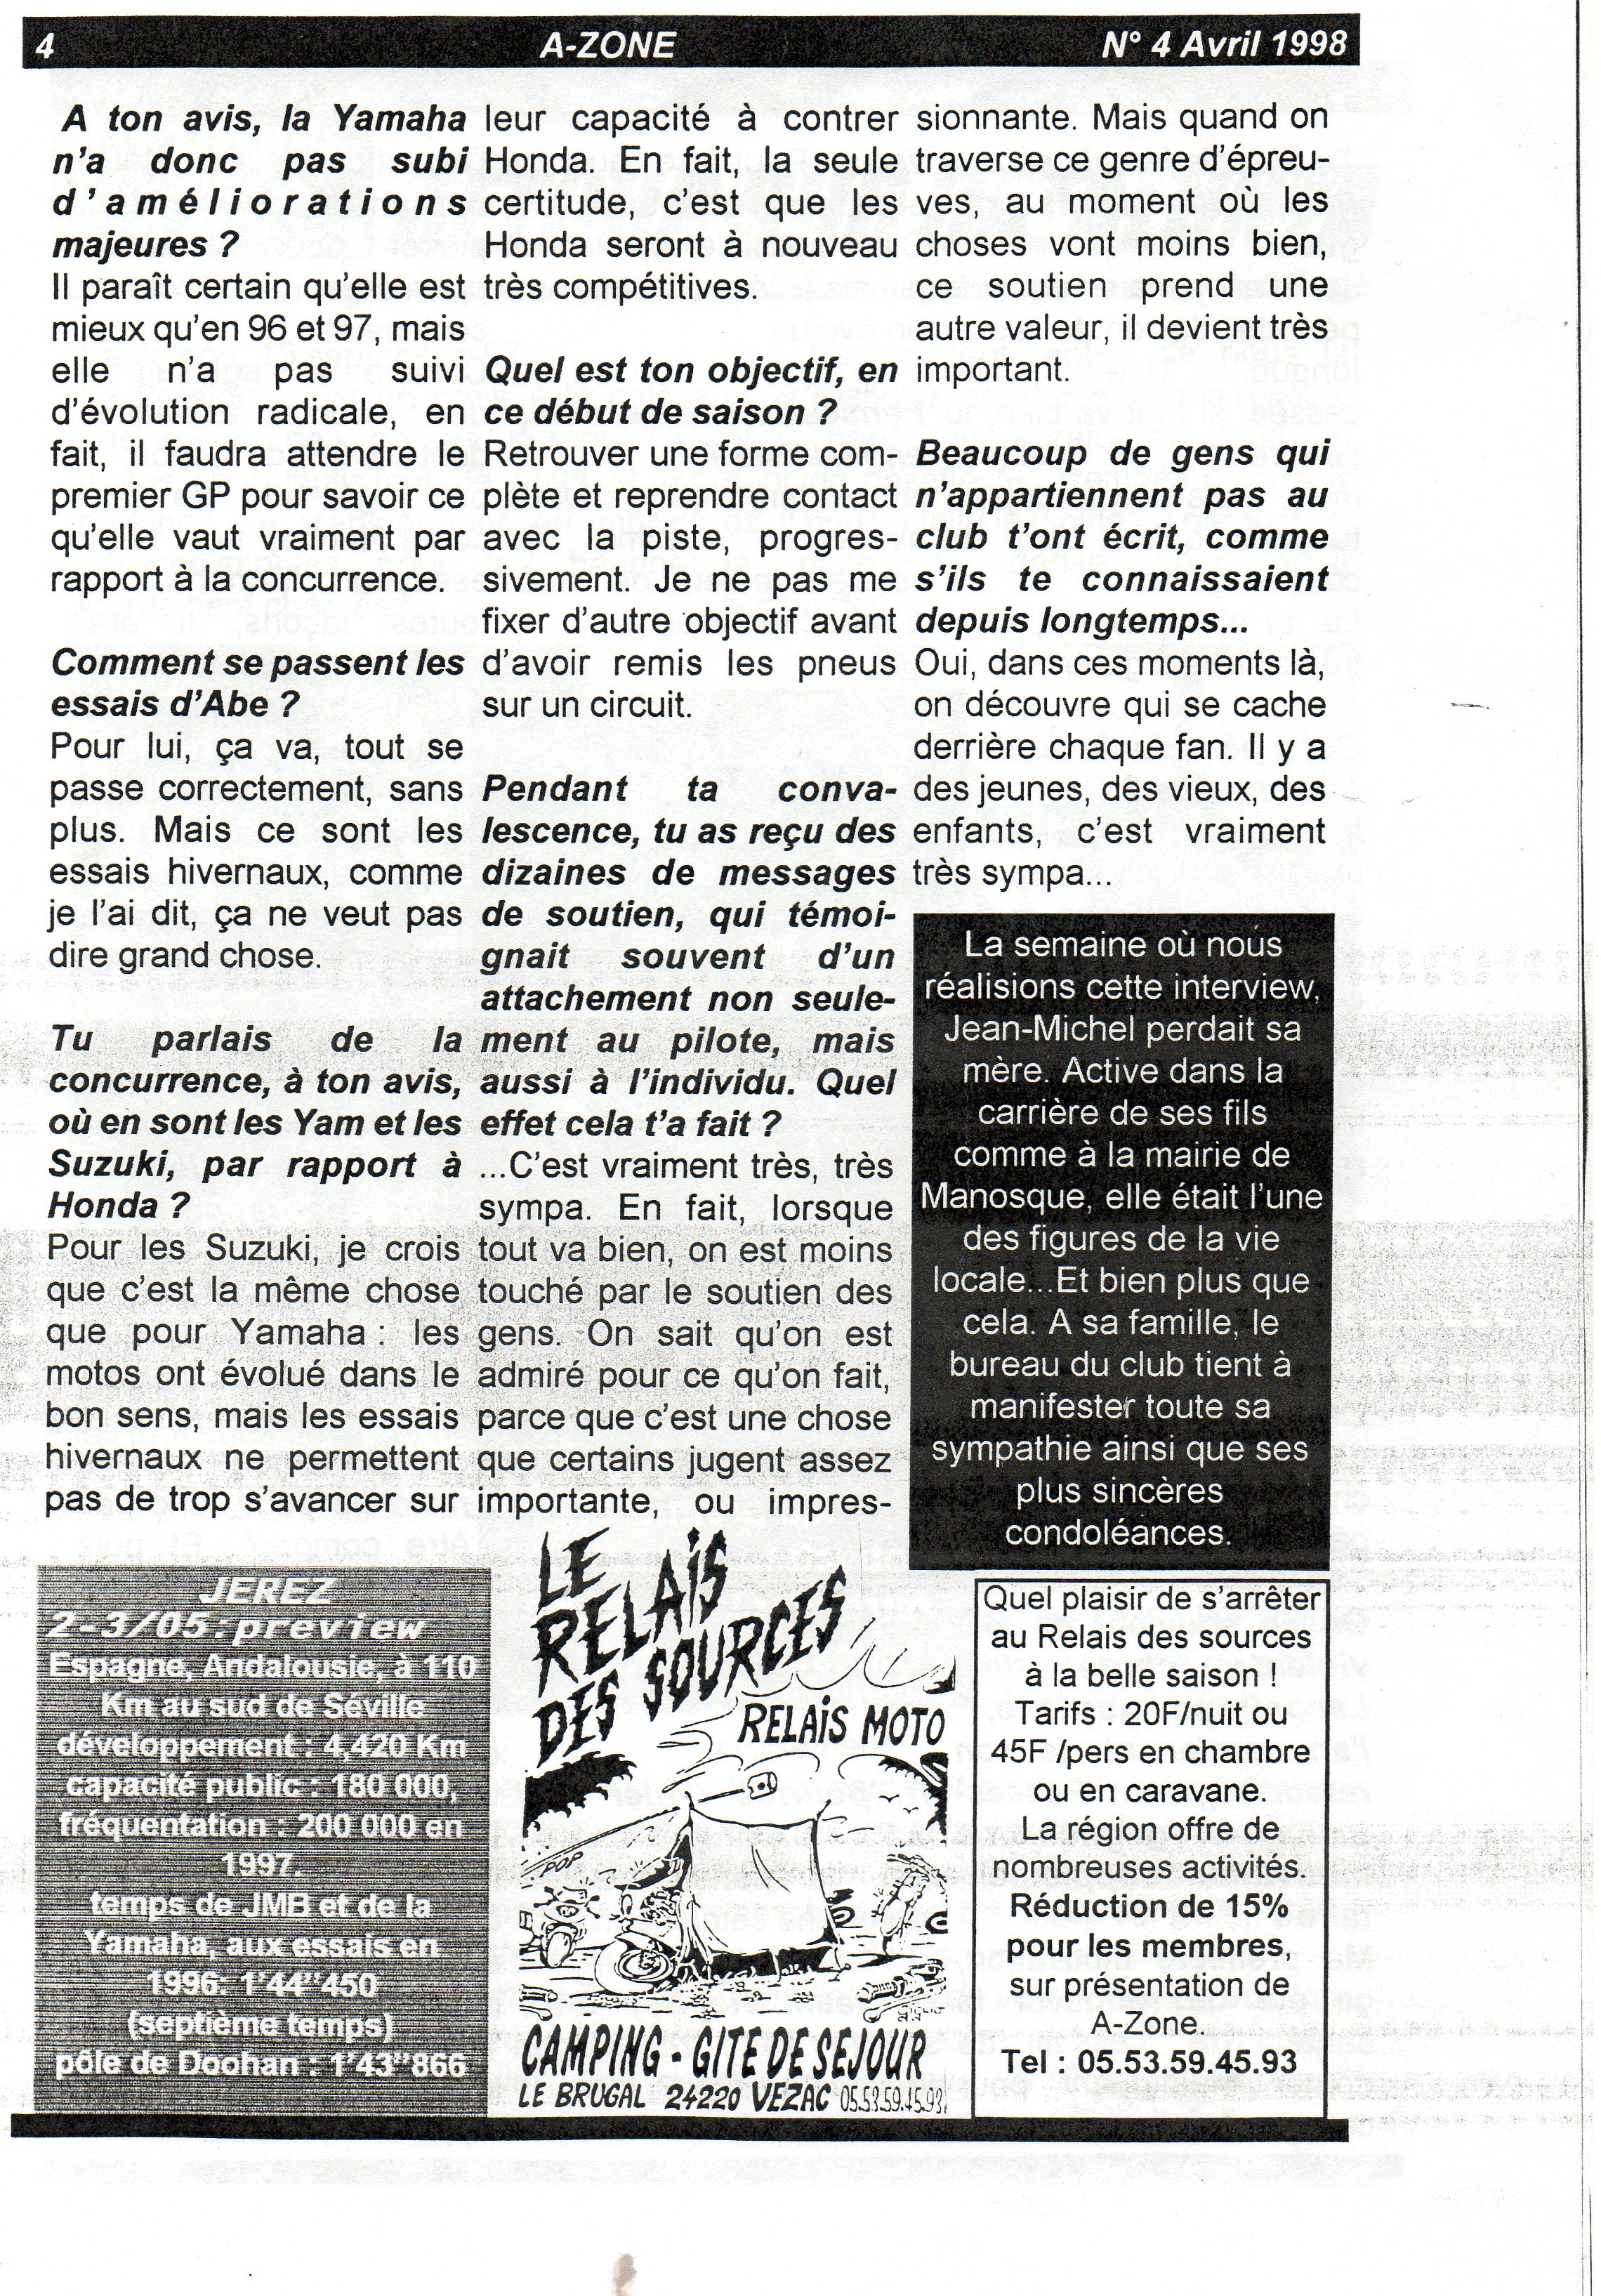 La page 4 du numéro d'AVril 1998 d'A Zone